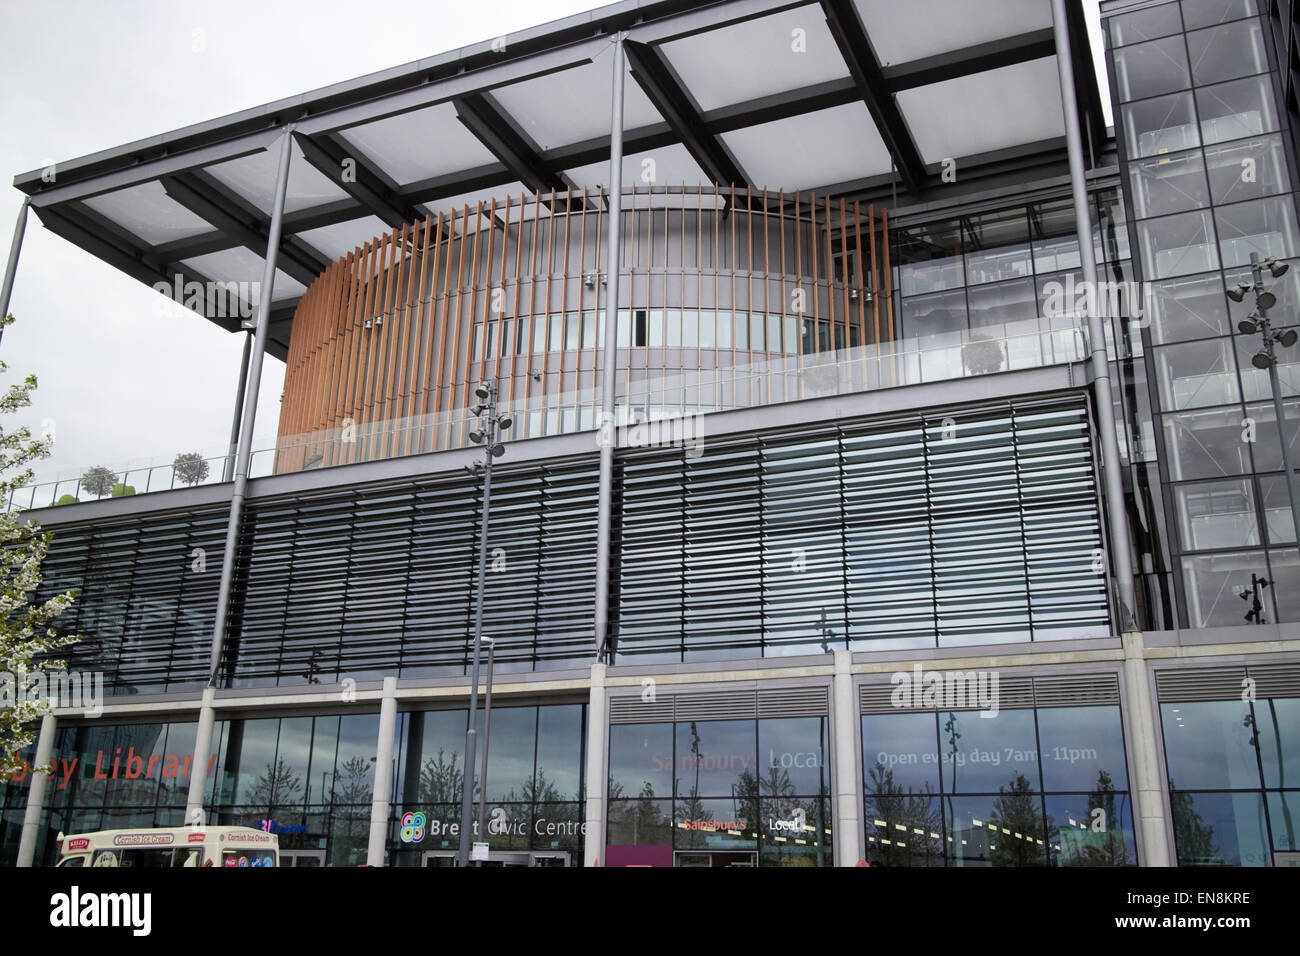 Brent civic center et bibliothèque de Wembley London UK Banque D'Images